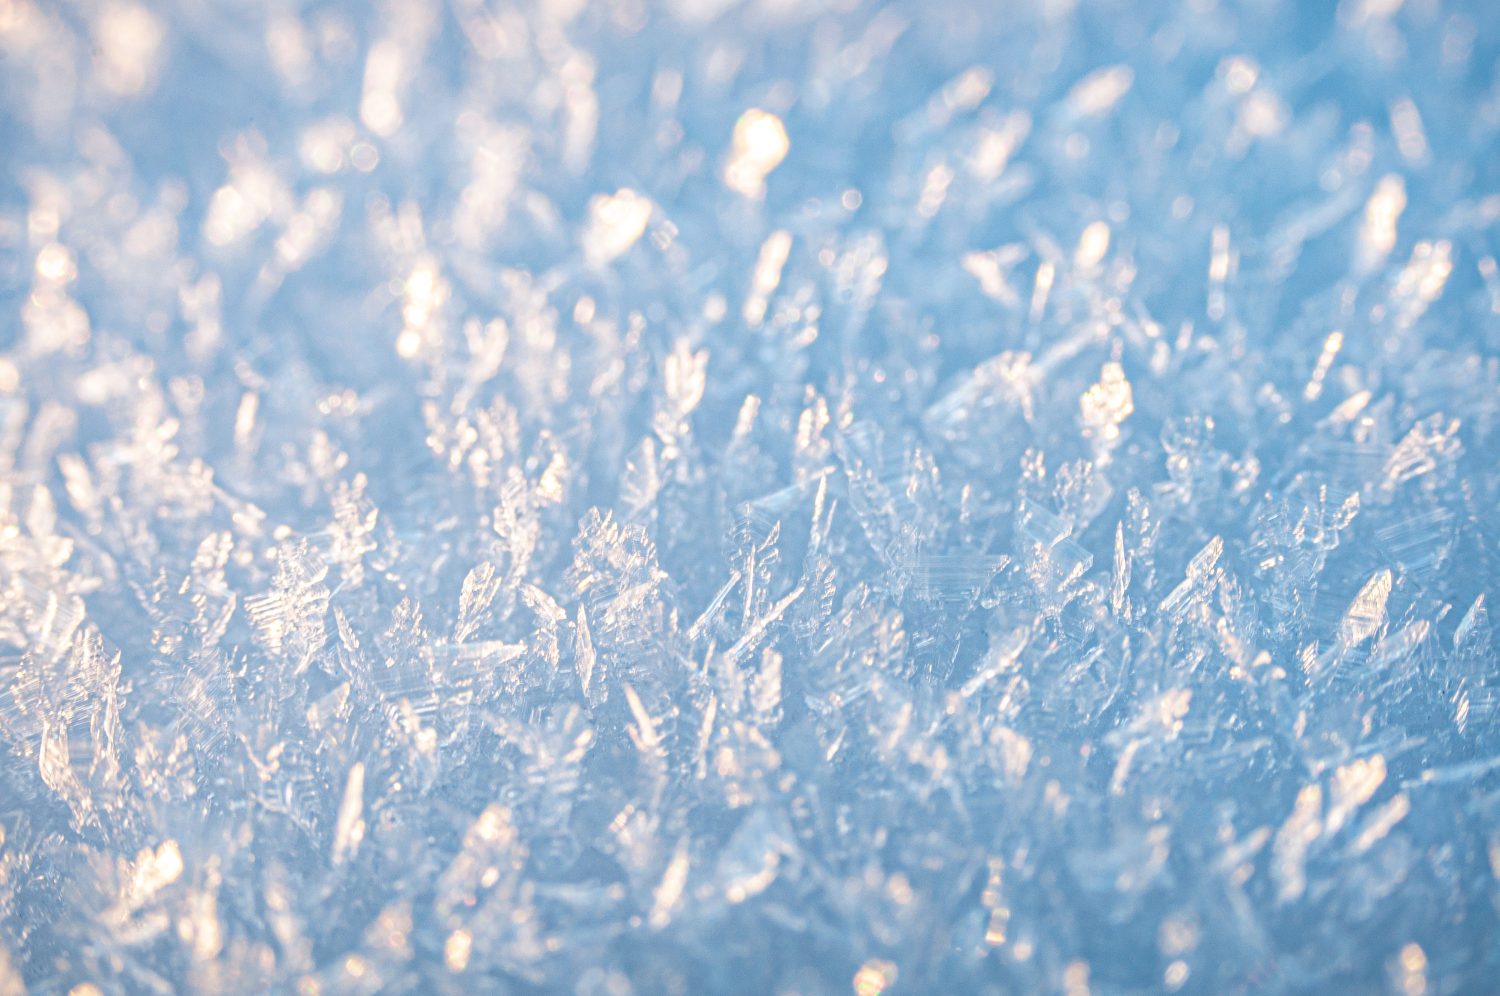 I fiocchi di neve, grazie alla loro composizione in cristalli di ghiaccio, sono unici